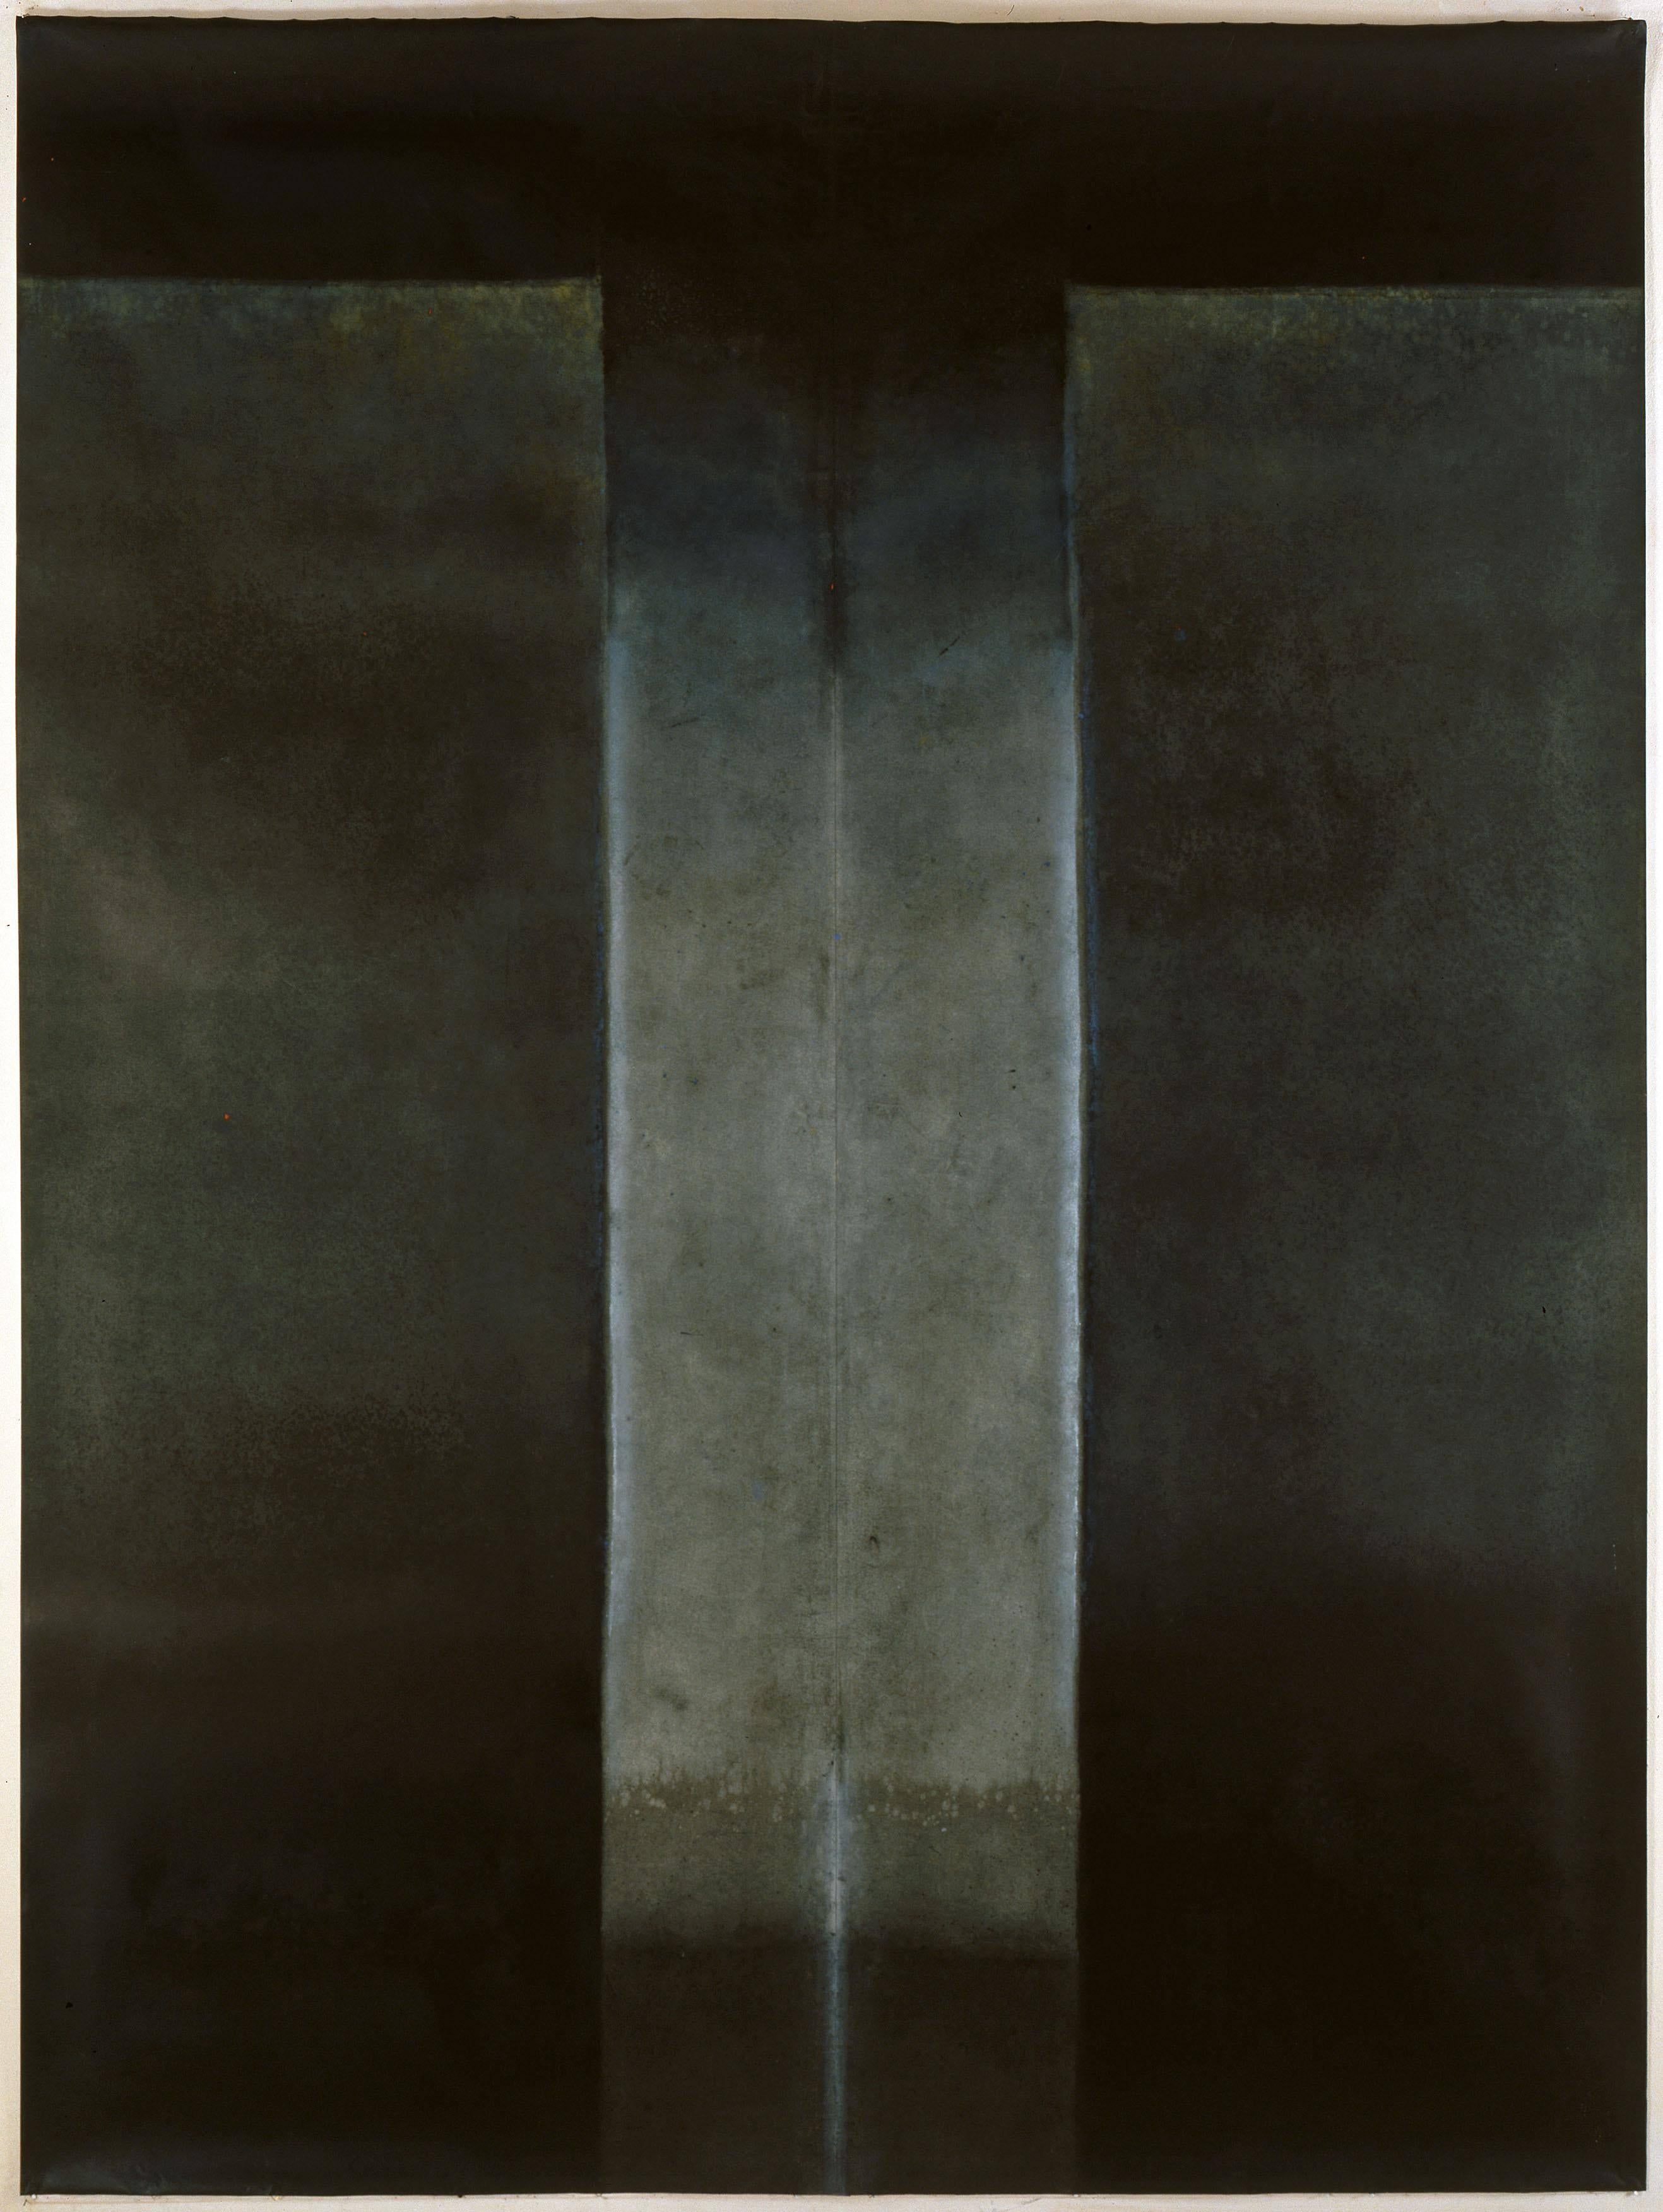 Abstract Painting Elvire Ferle - Untitled XXXIX by Ferle - Grande peinture abstraite, grise et noire, tons sombres